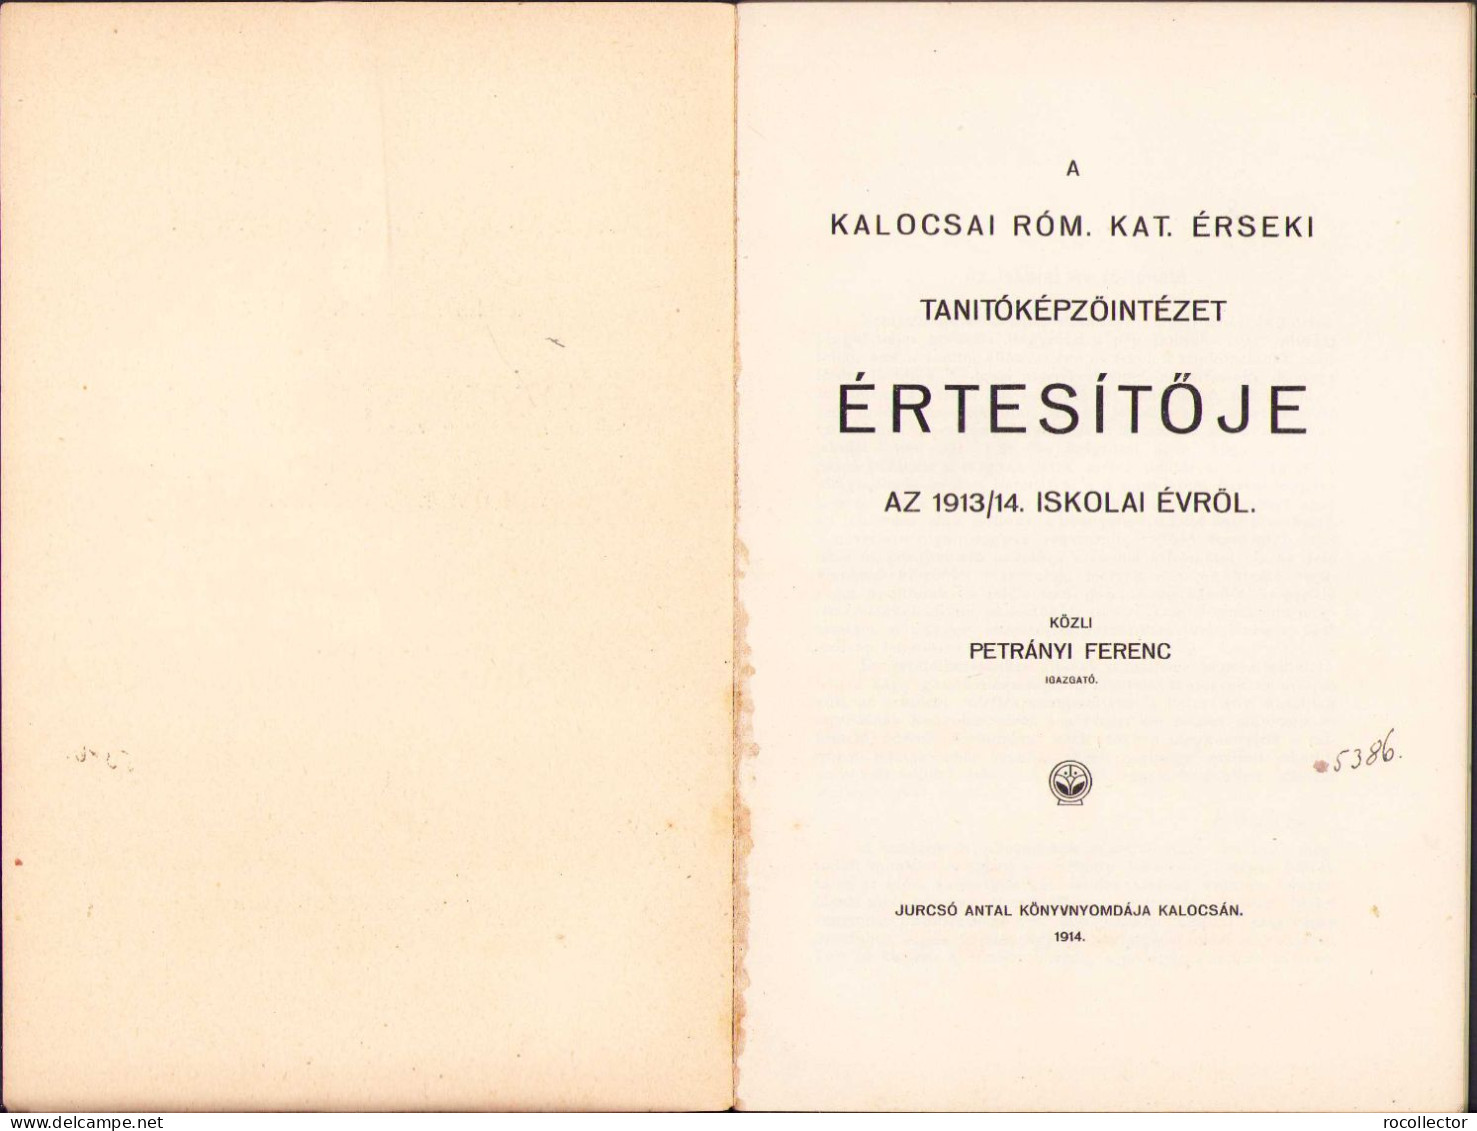 A Kalocsai Róm. Kat. érseki Tanitóképzőintézet értesitője Az 1913/14 Iskolai évről C1150 - Alte Bücher